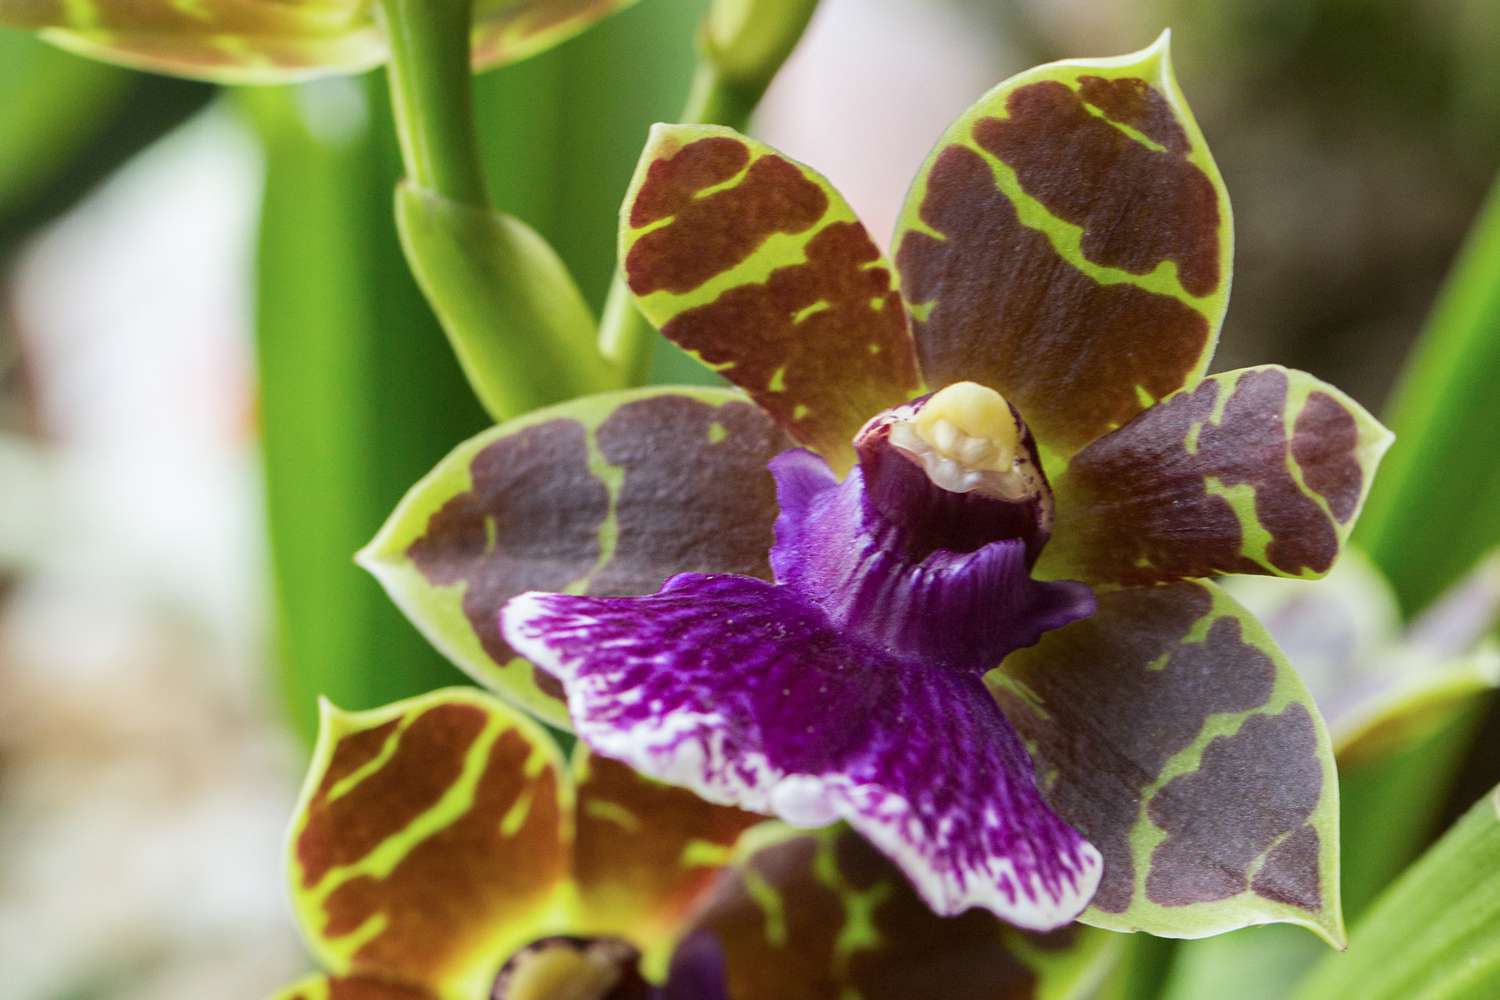 Zygopetalum-Orchidee mit weinroten und grünen Blütenblättern hinter hellvioletter Lippe in Nahaufnahme 